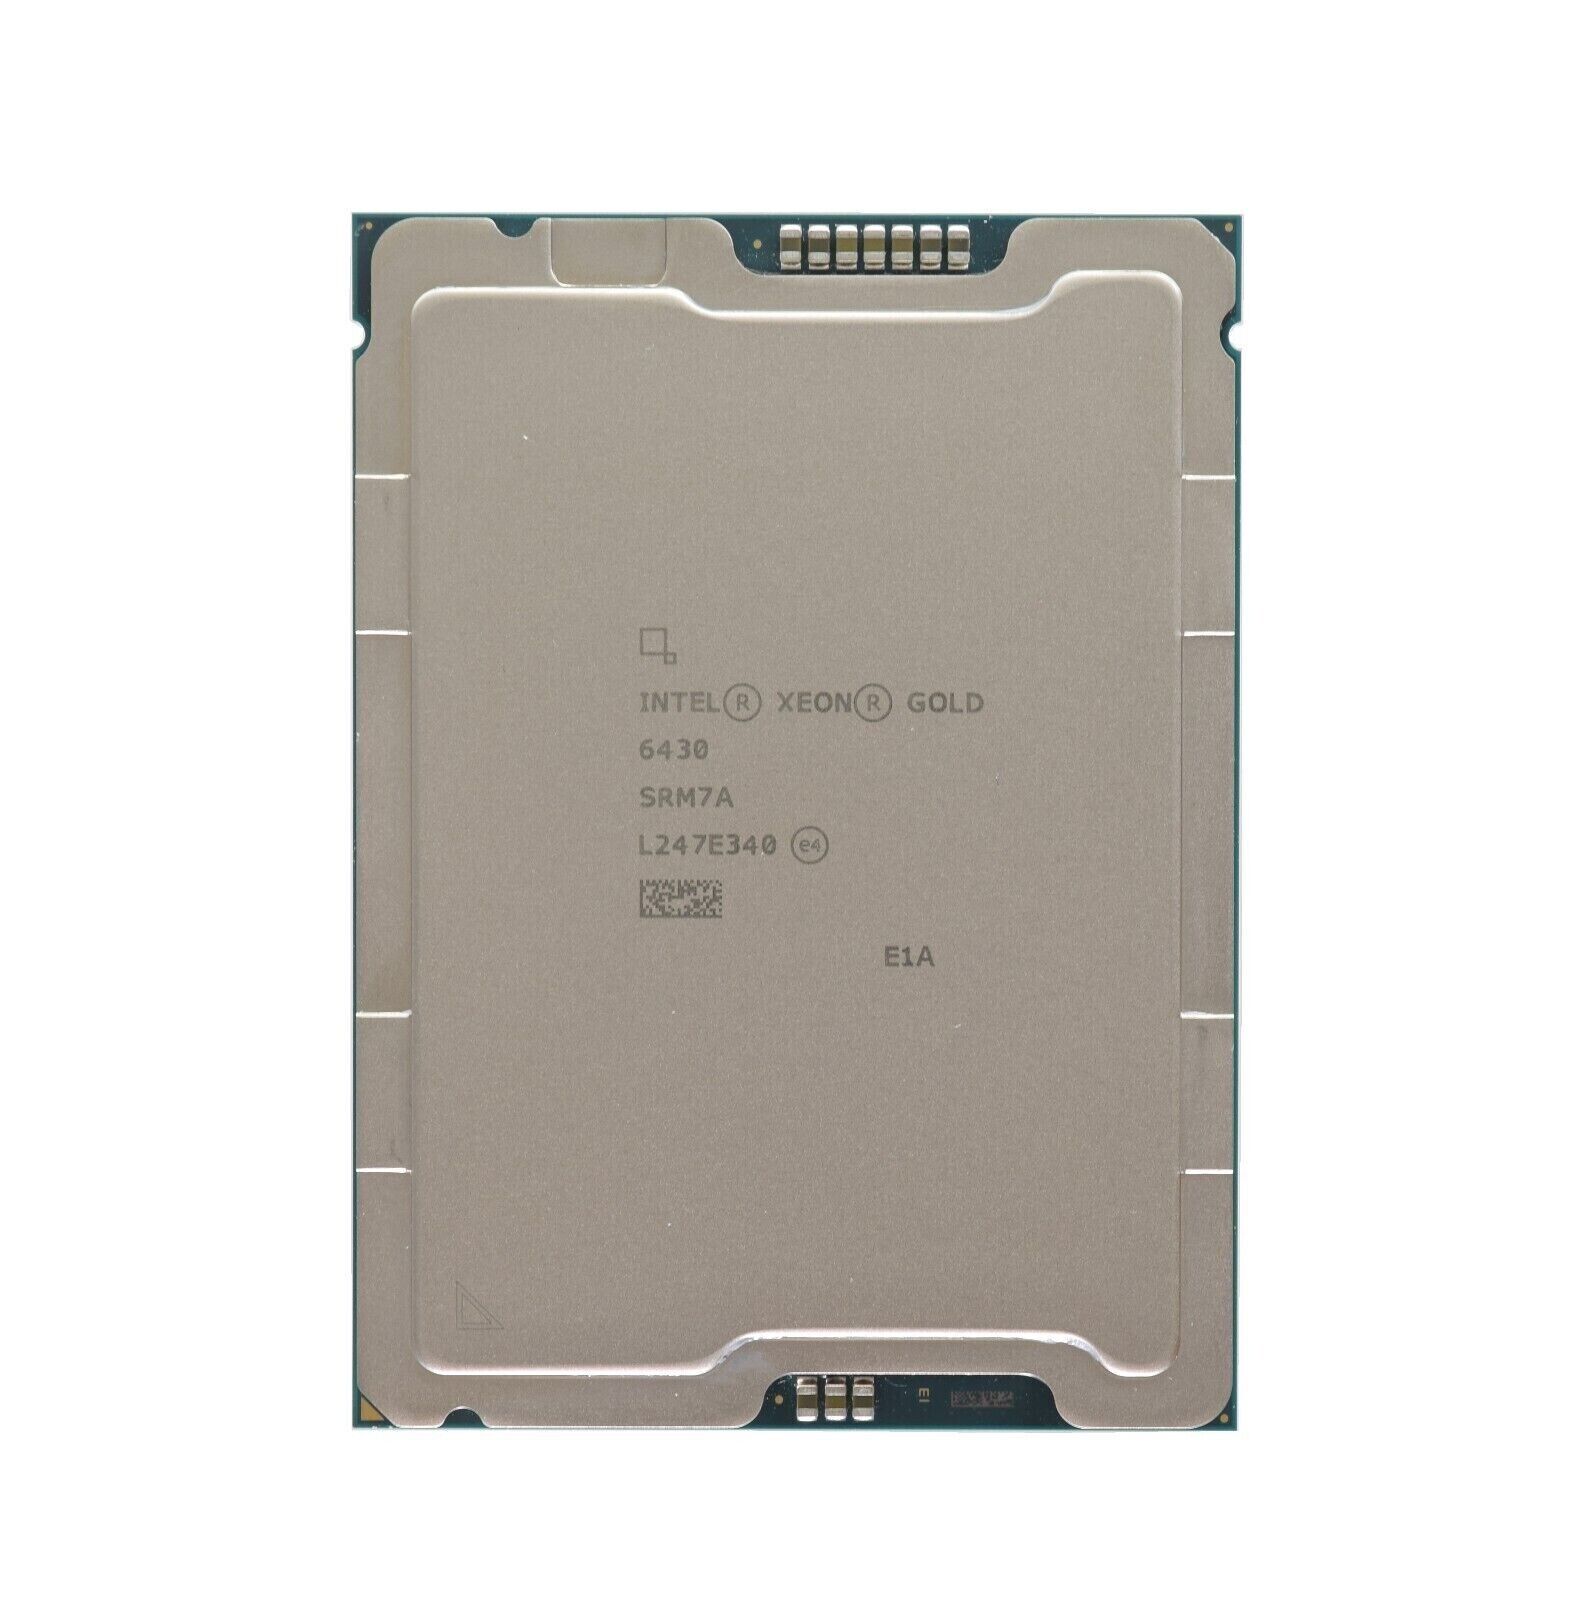 SRM7A Intel Xeon Gold 6430 32-Core 3.40GHZ 64MB 270W PK8071305072902 Processor